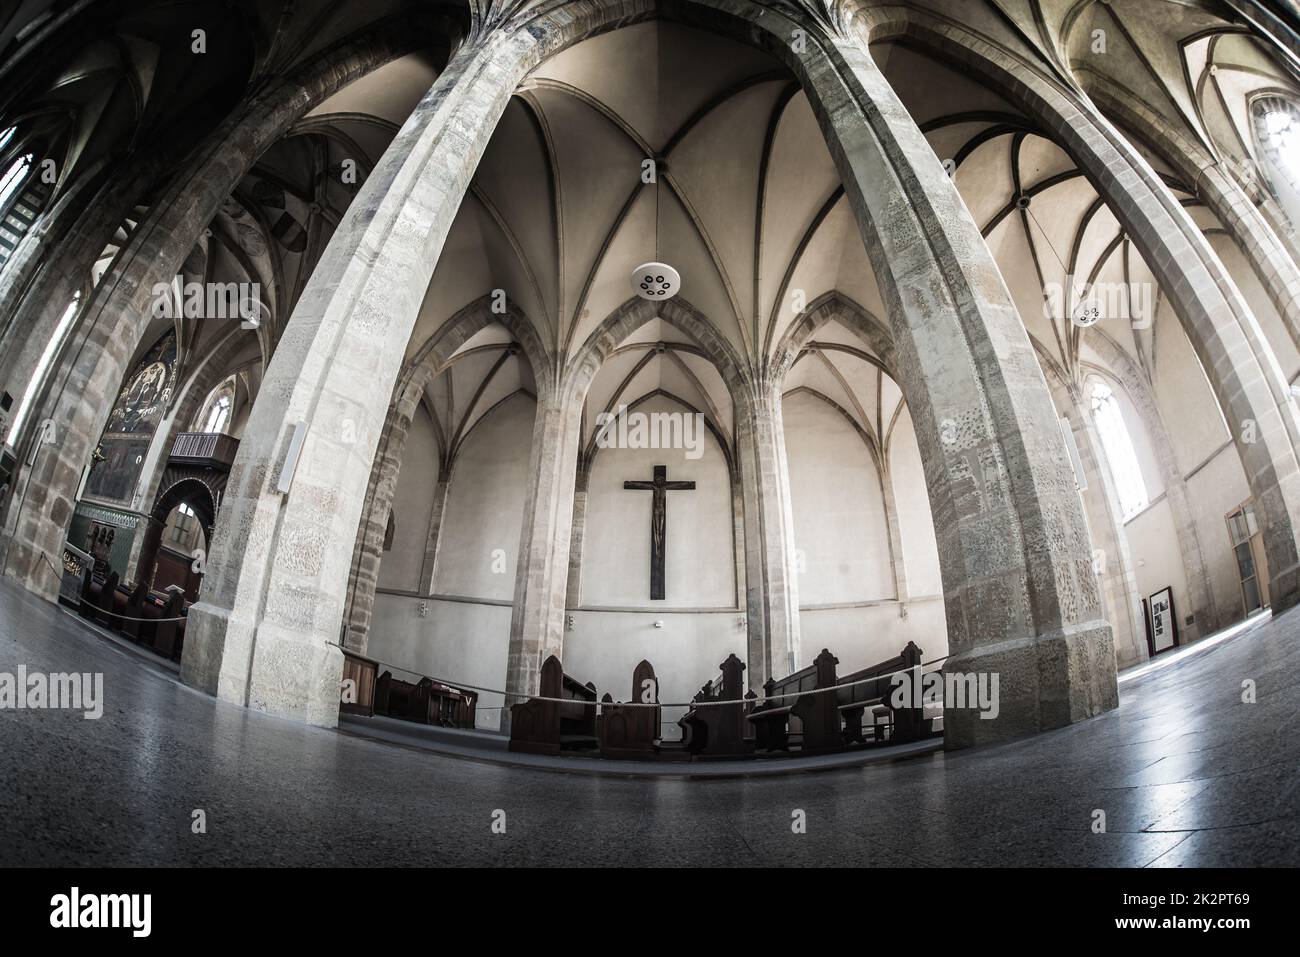 PRAGA, REPUBBLICA CECA - 23 MAGGIO 2017: La navata del monastero di Emmaus Foto Stock